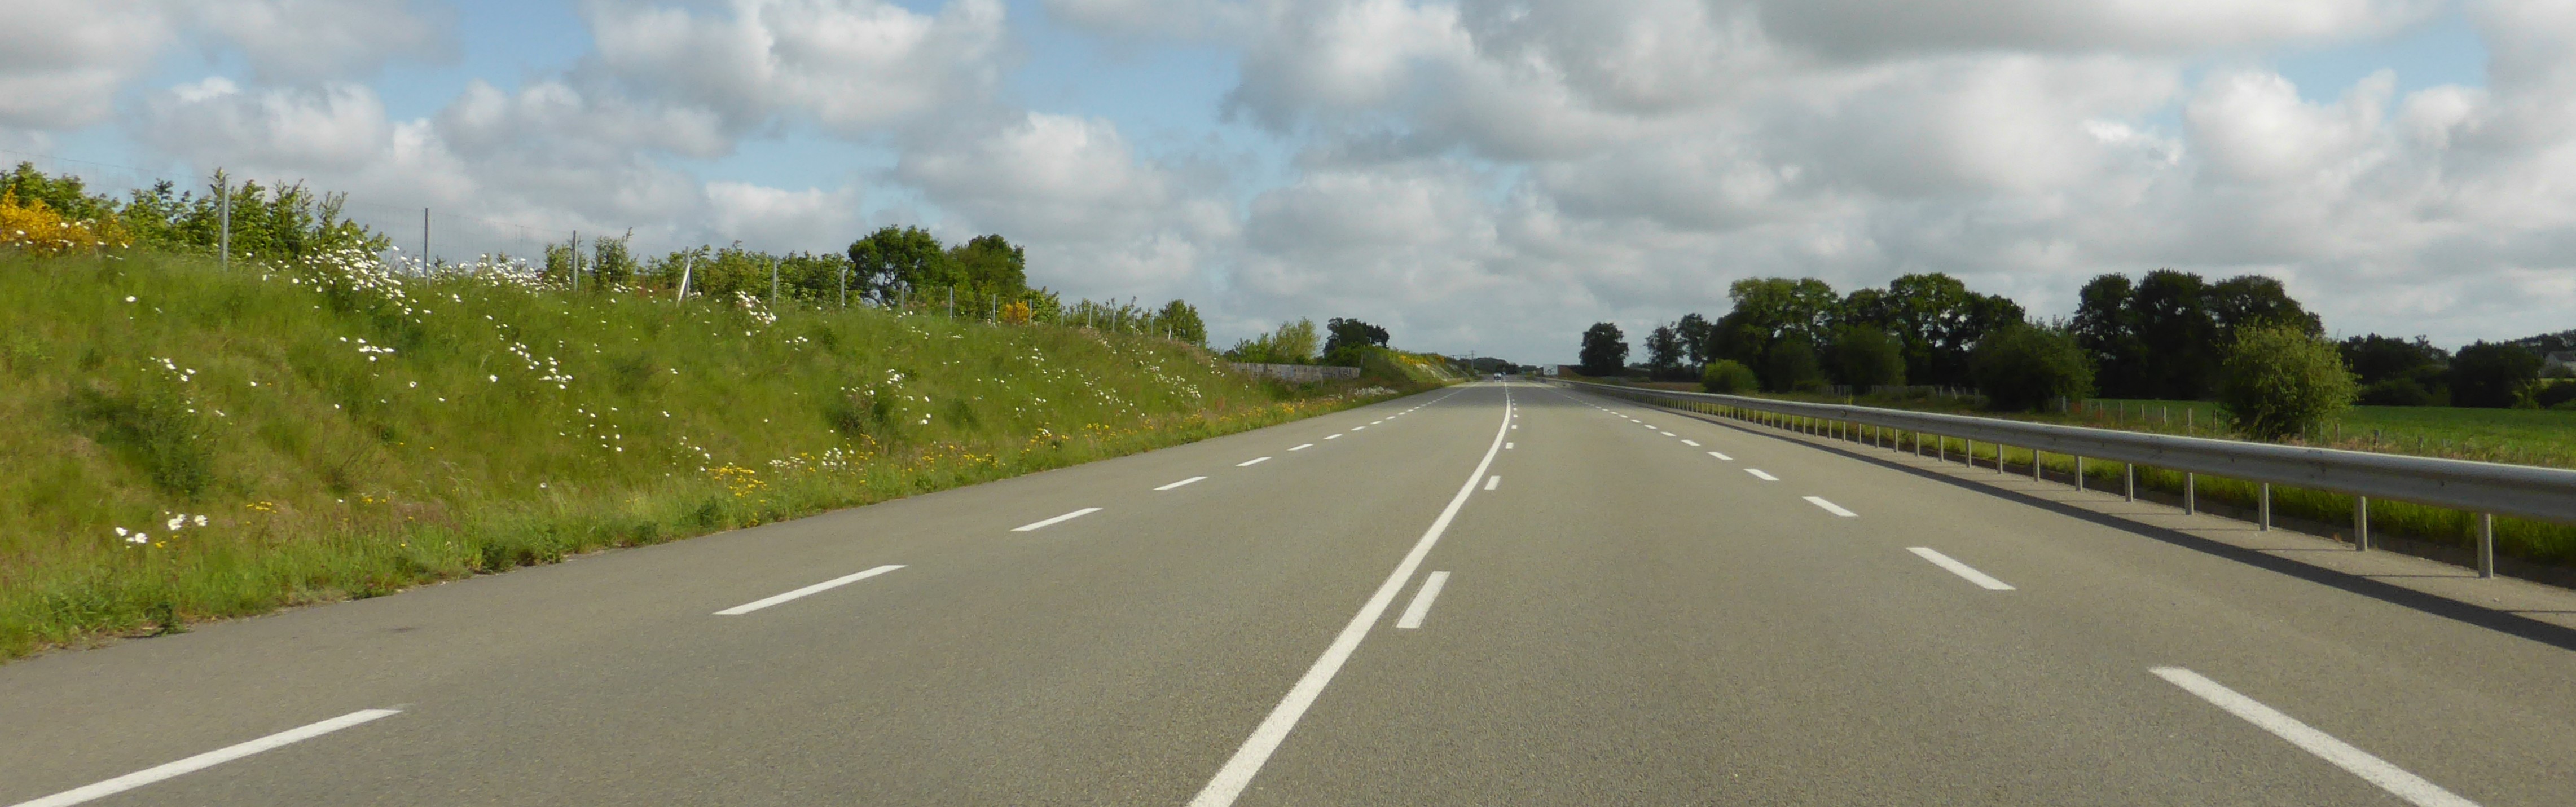 L'axe de contournement de Mayenne est accompagné d'un talus qui limite les rapports de covisibilité et donc la perception des franges de la ville (Mayenne - 2015) en grand format (nouvelle fenêtre)